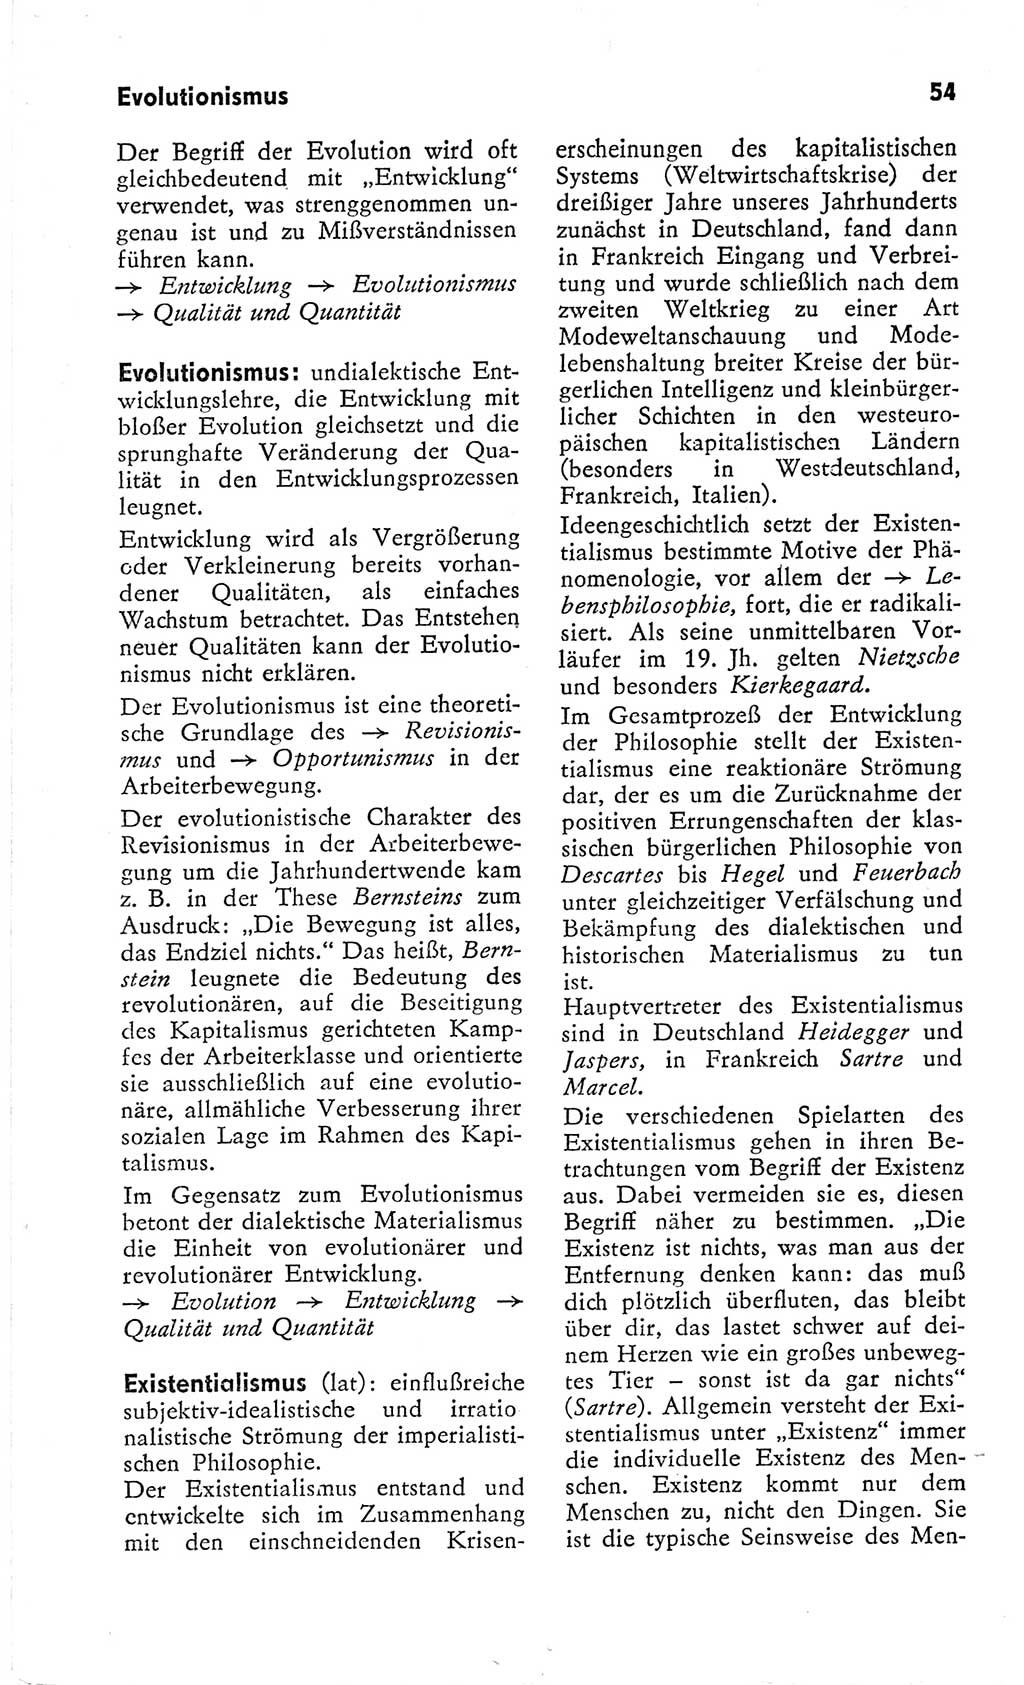 Kleines Wörterbuch der marxistisch-leninistischen Philosophie [Deutsche Demokratische Republik (DDR)] 1966, Seite 54 (Kl. Wb. ML Phil. DDR 1966, S. 54)